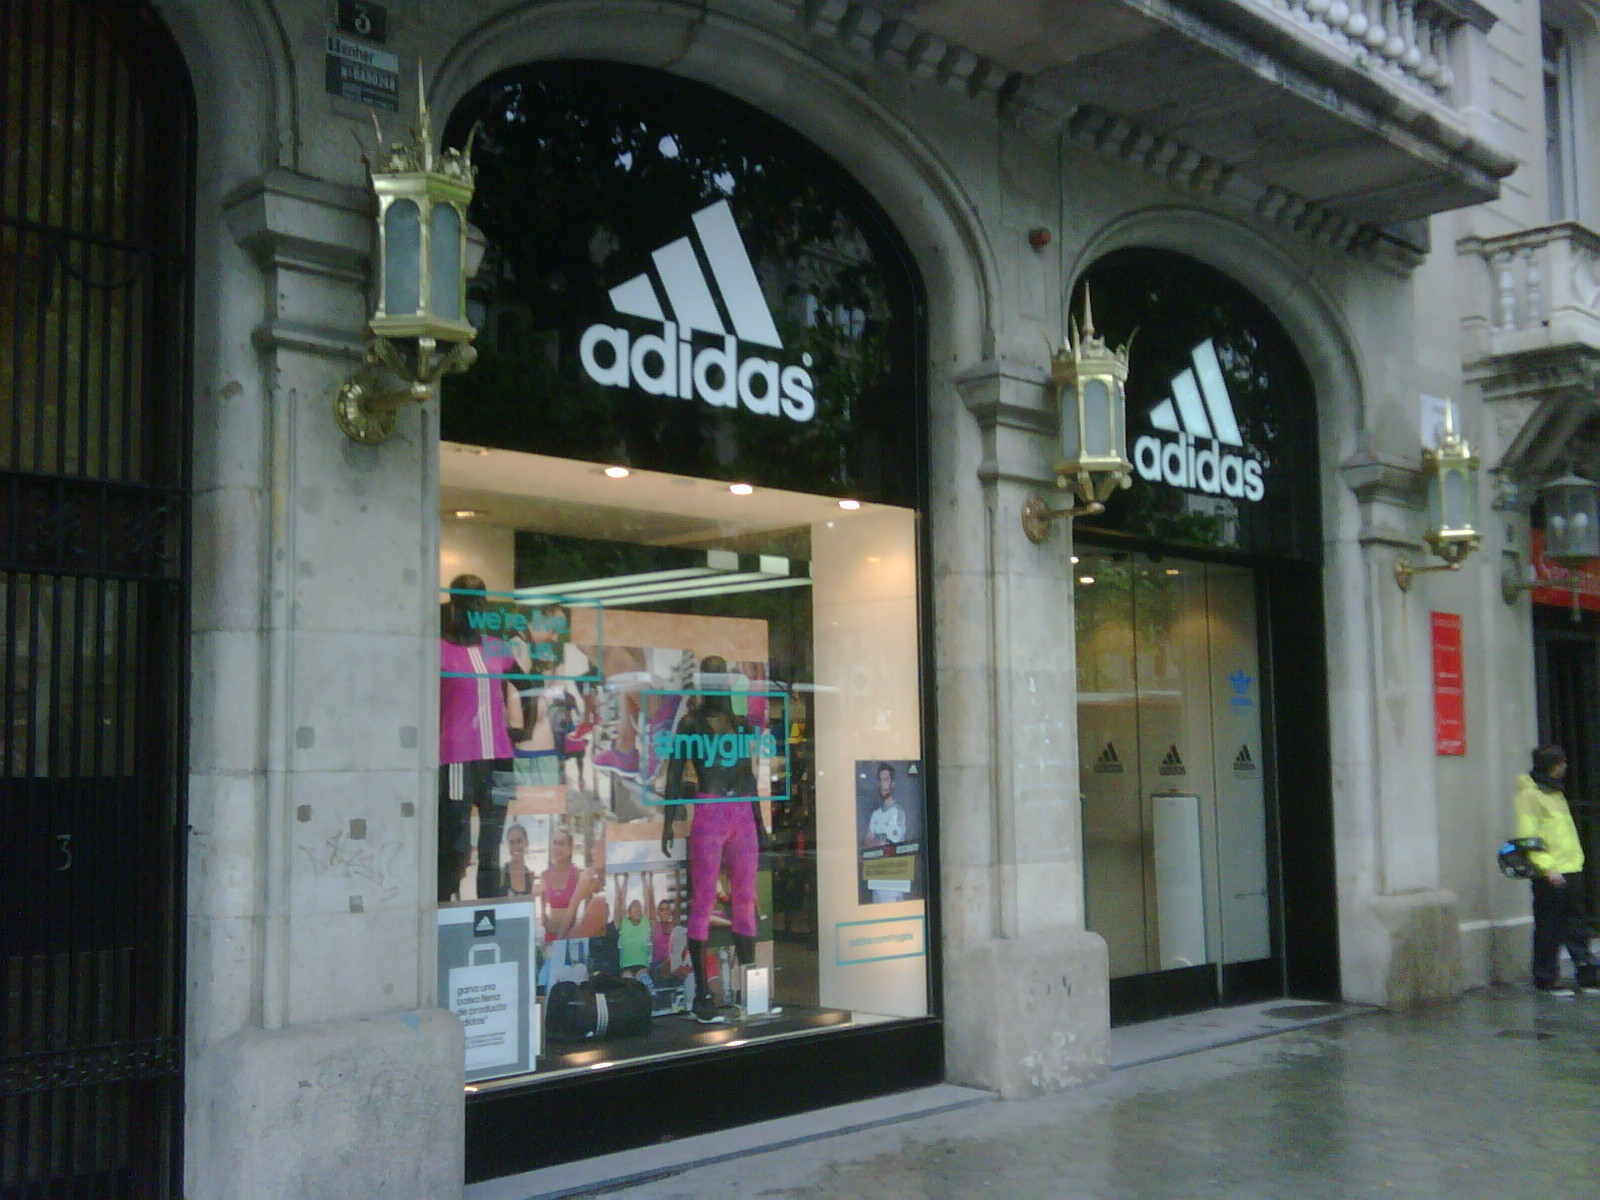 Tienda Adidas Buy Now, Sales, www.busformentera.com